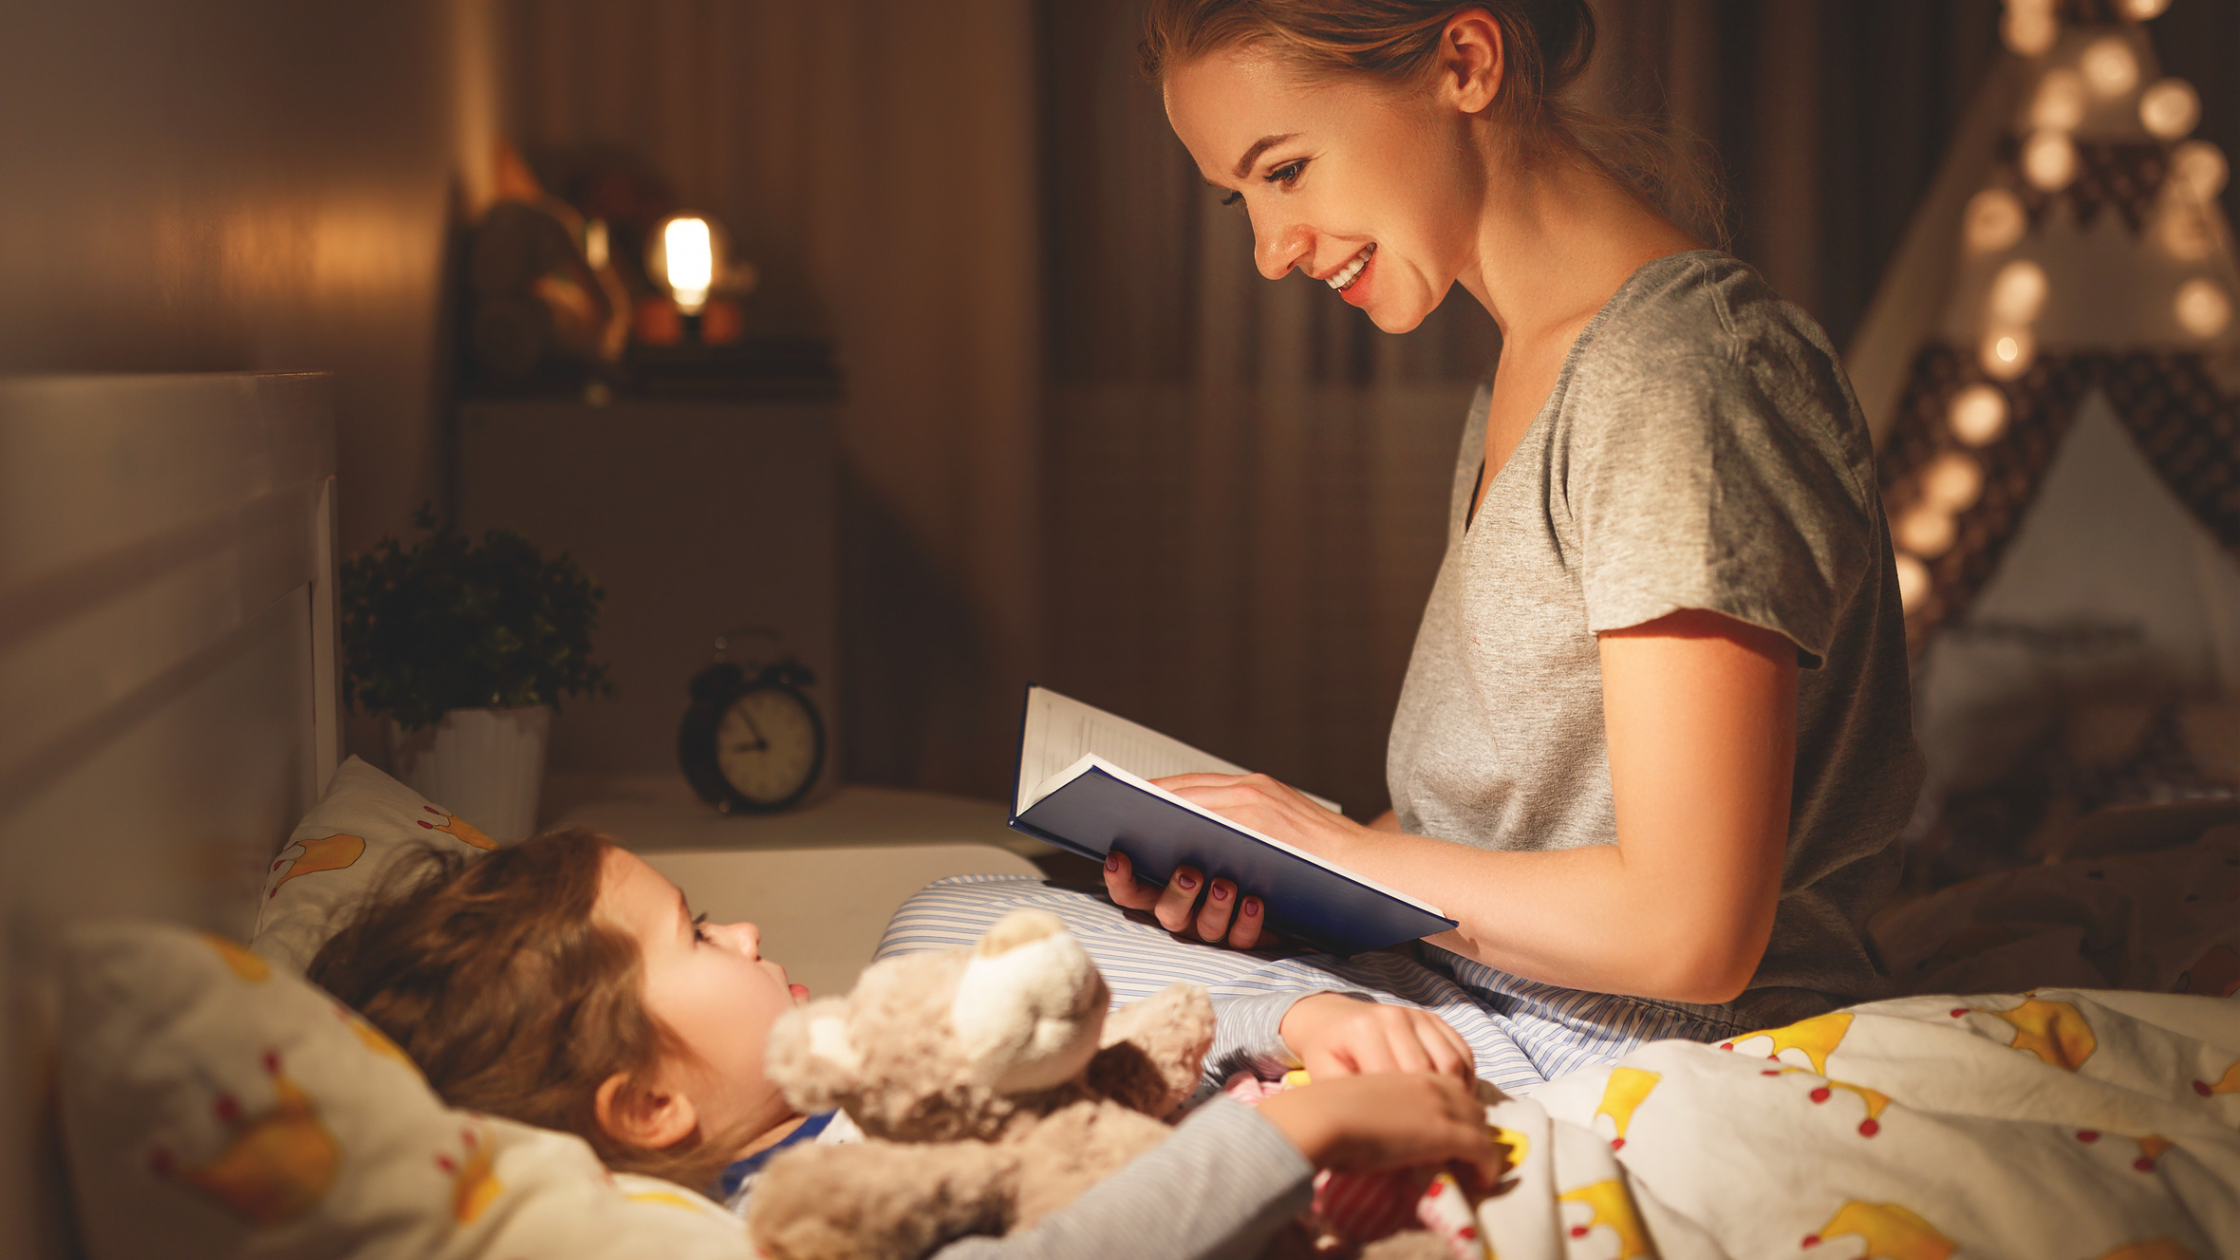 Чтение перед сном. Семейное чтение. Мама читает ребенку. Няня укладывает спать